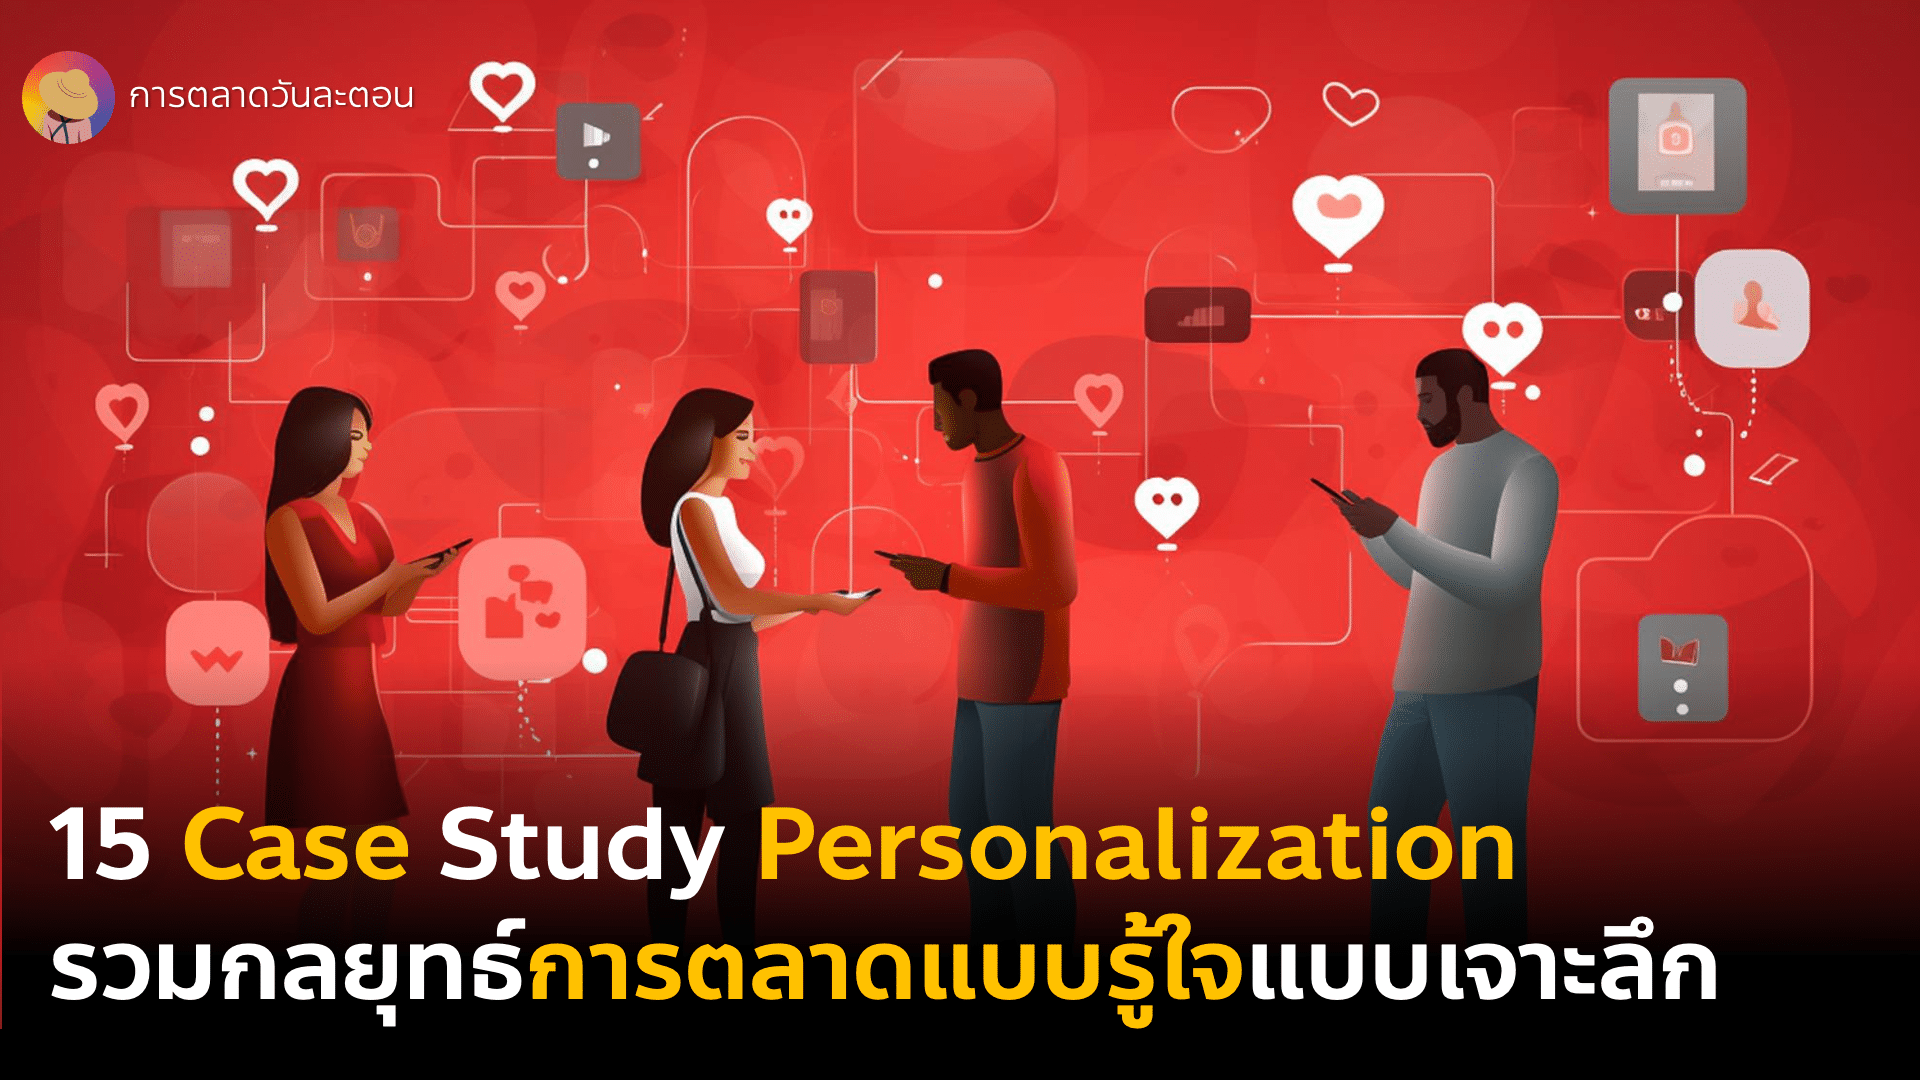 15 Case Study Personalization เริ่มการตลาดแบบรู้ใจด้วย Customer Data